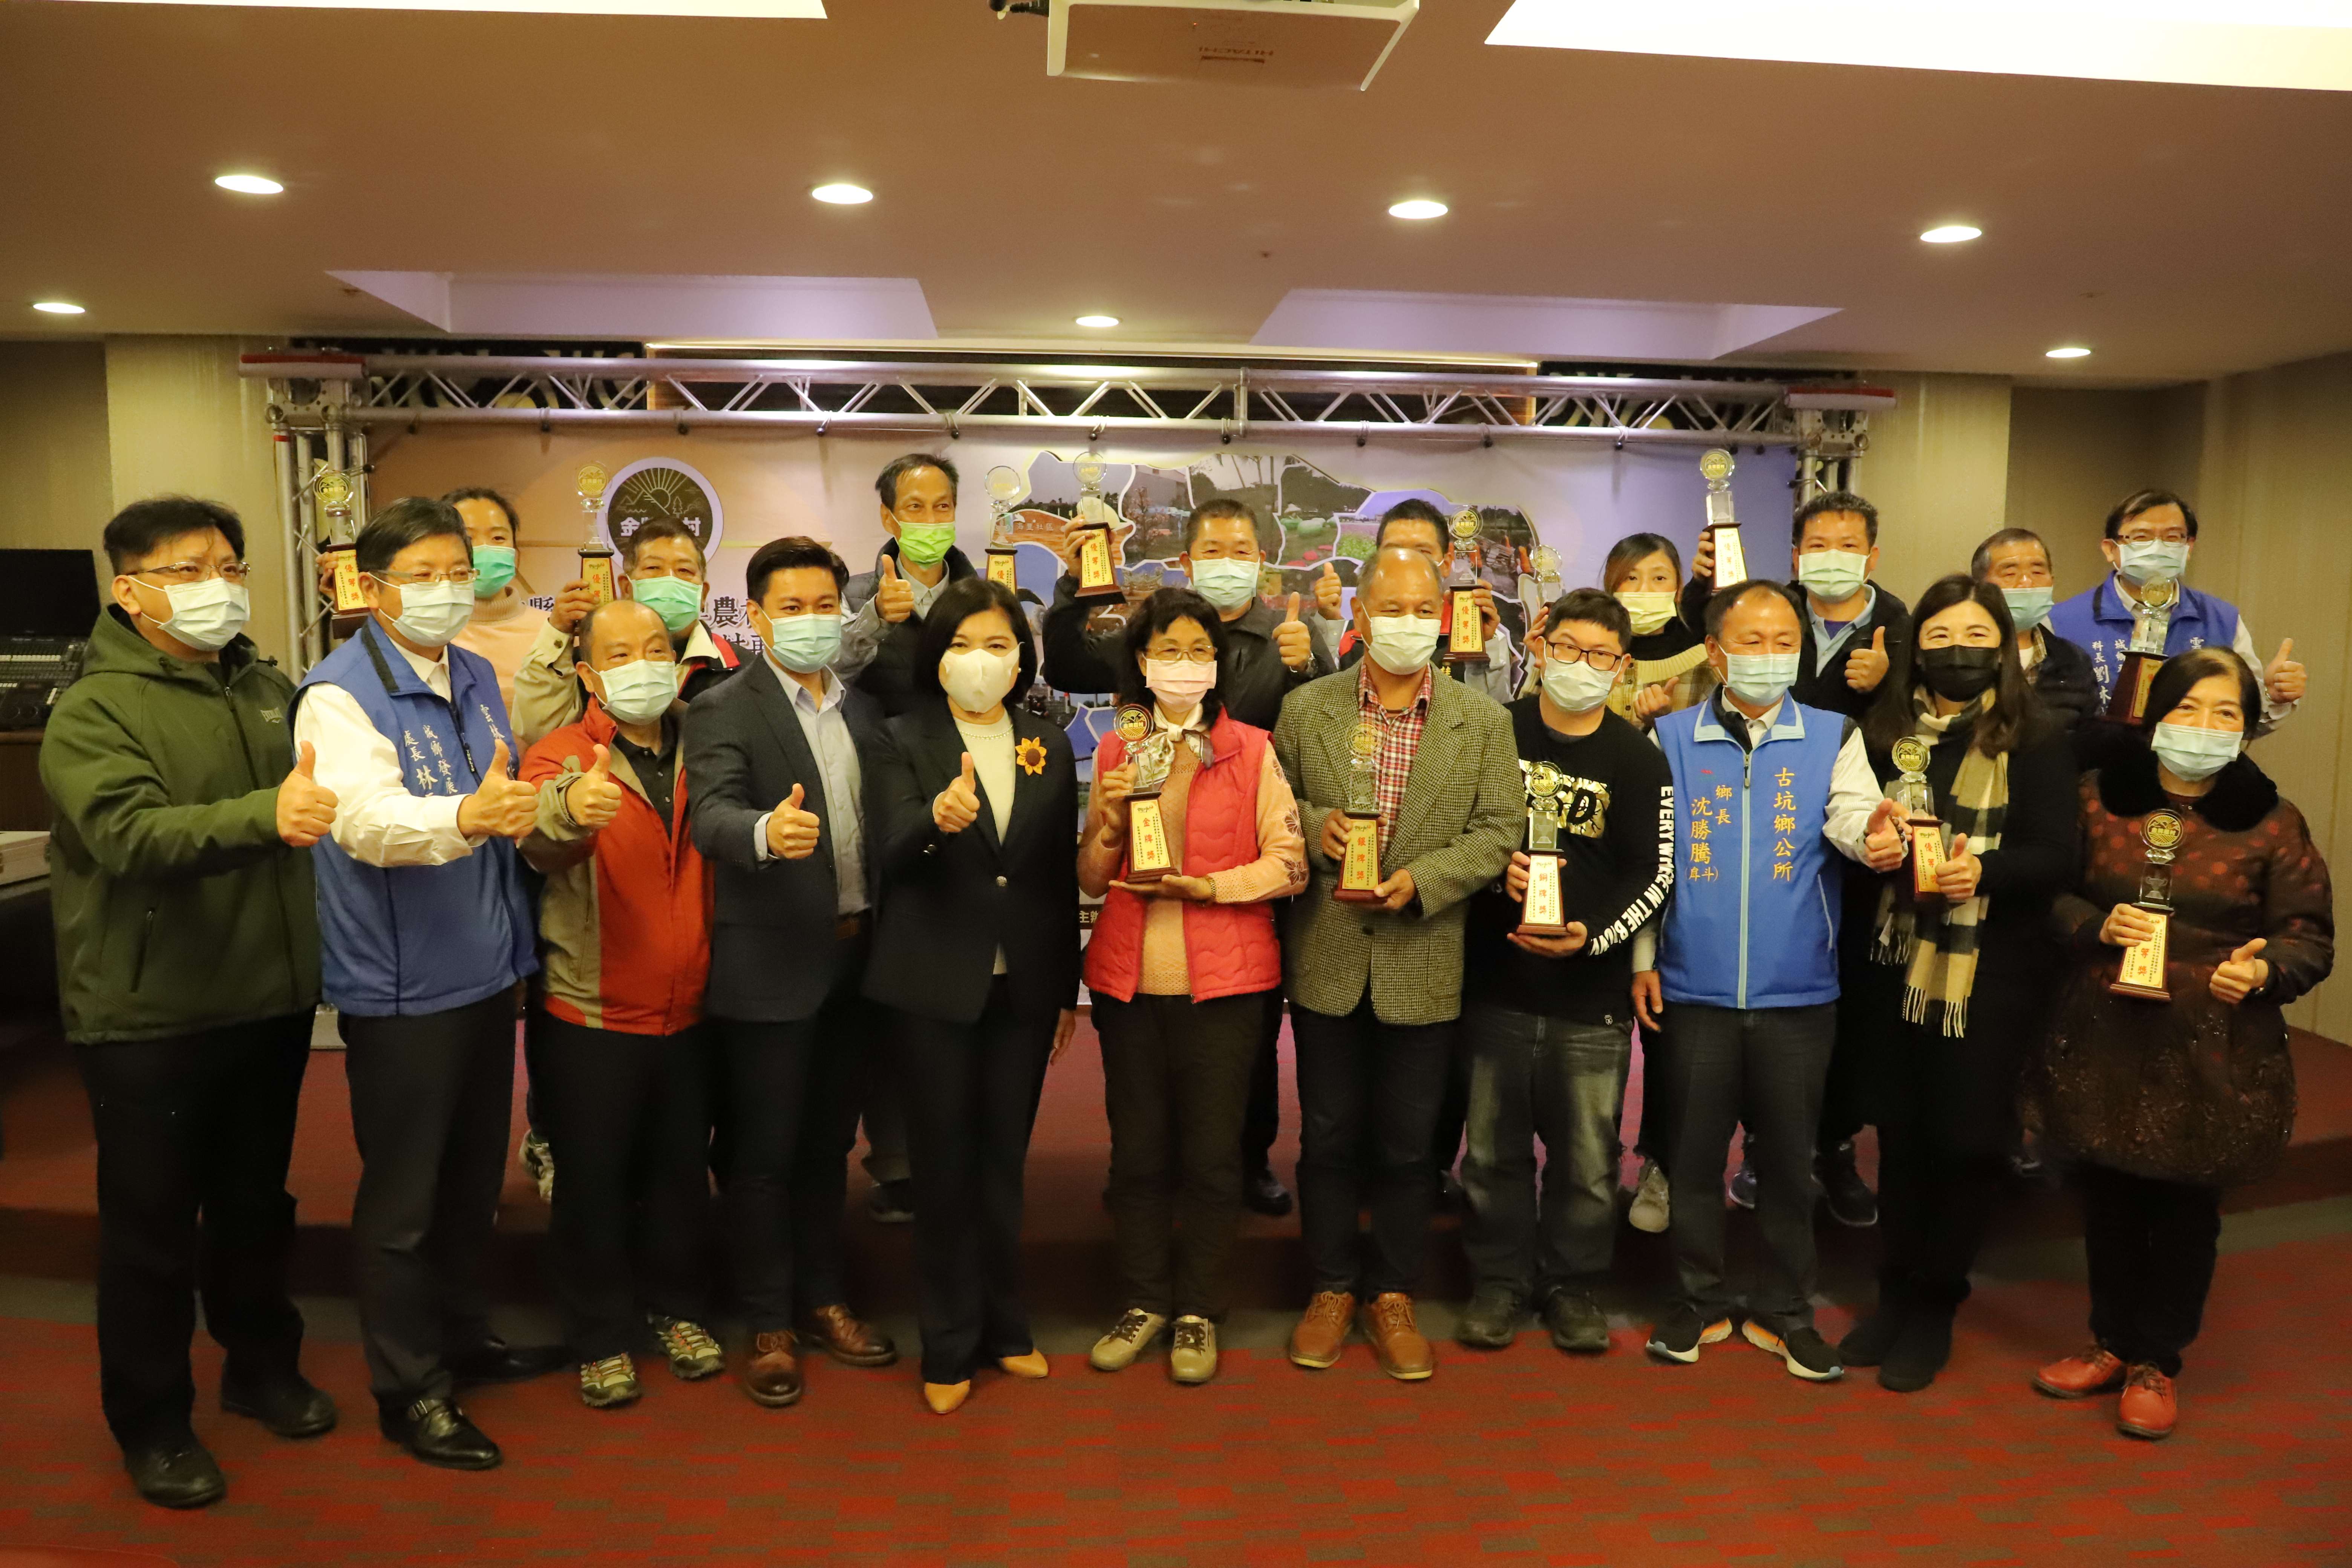 張縣長頒獎表揚雲林縣第二屆金牌農村競賽13個獲獎社區。